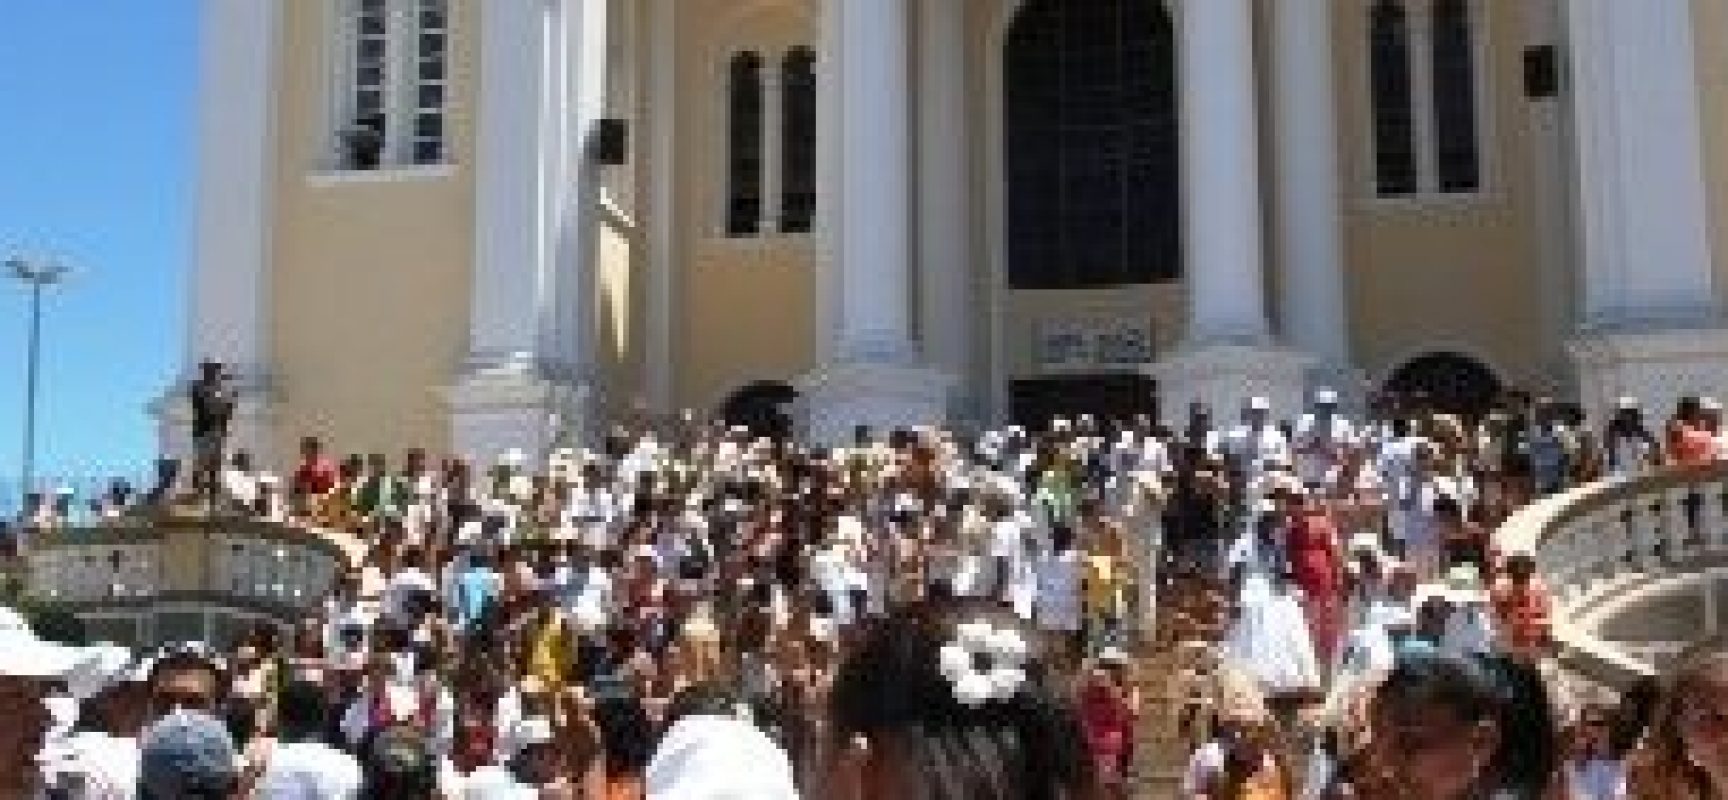 Lavagem das Escadarias da Catedral e chegada do MSC Seaview agitam Ilhéus nesta quinta-feira (17)